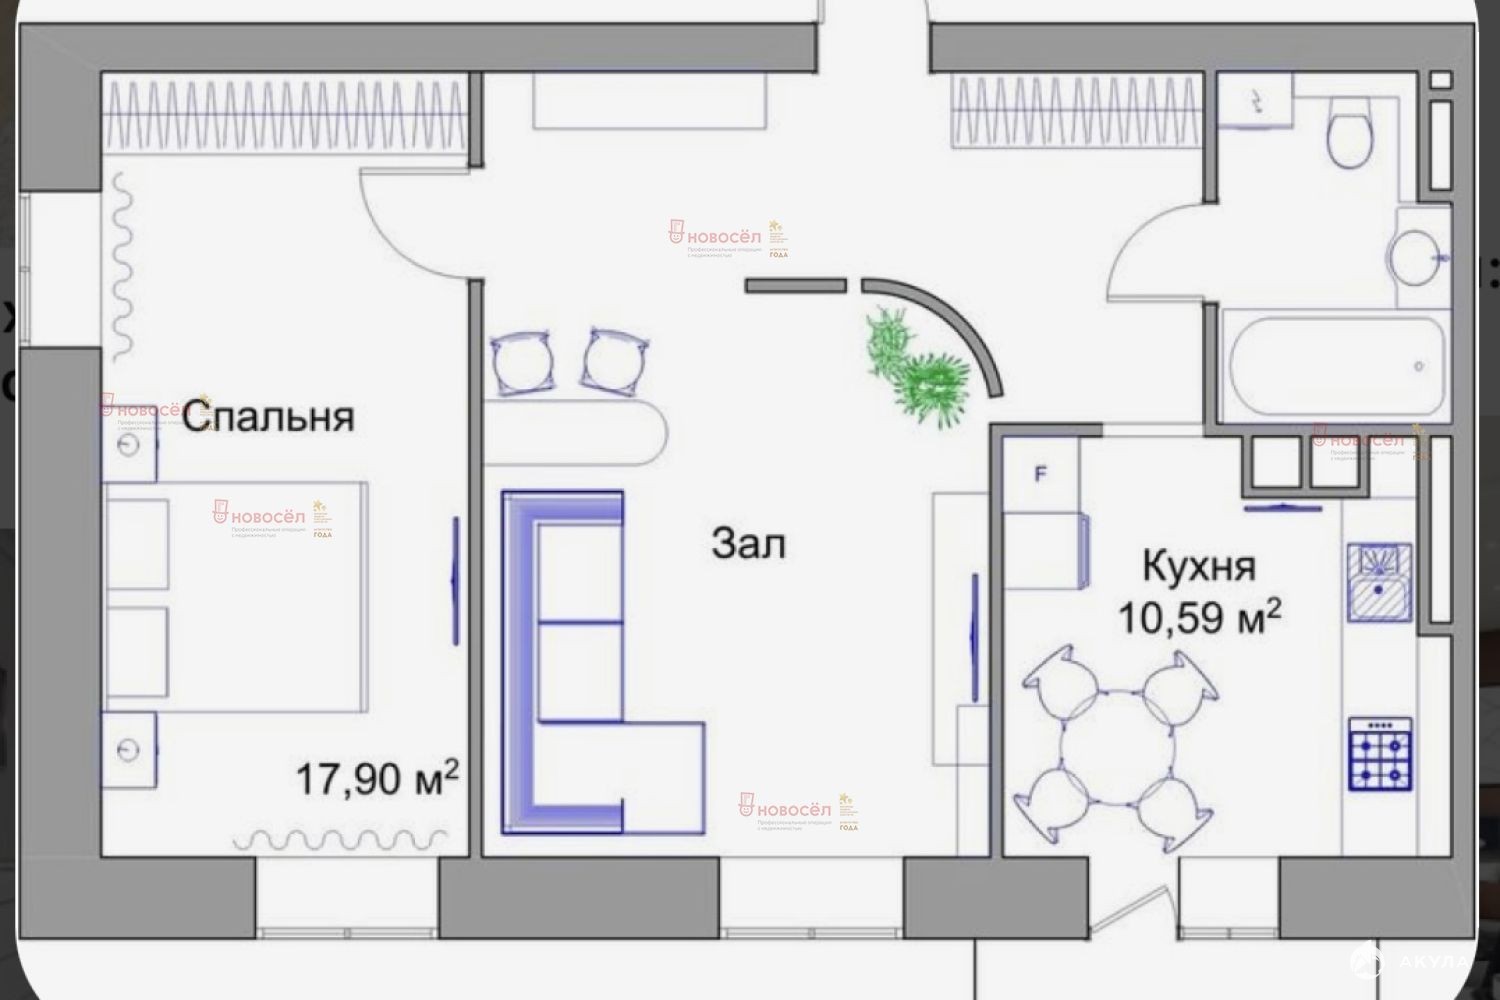 Схемы планировки 2-х комнатных квартир